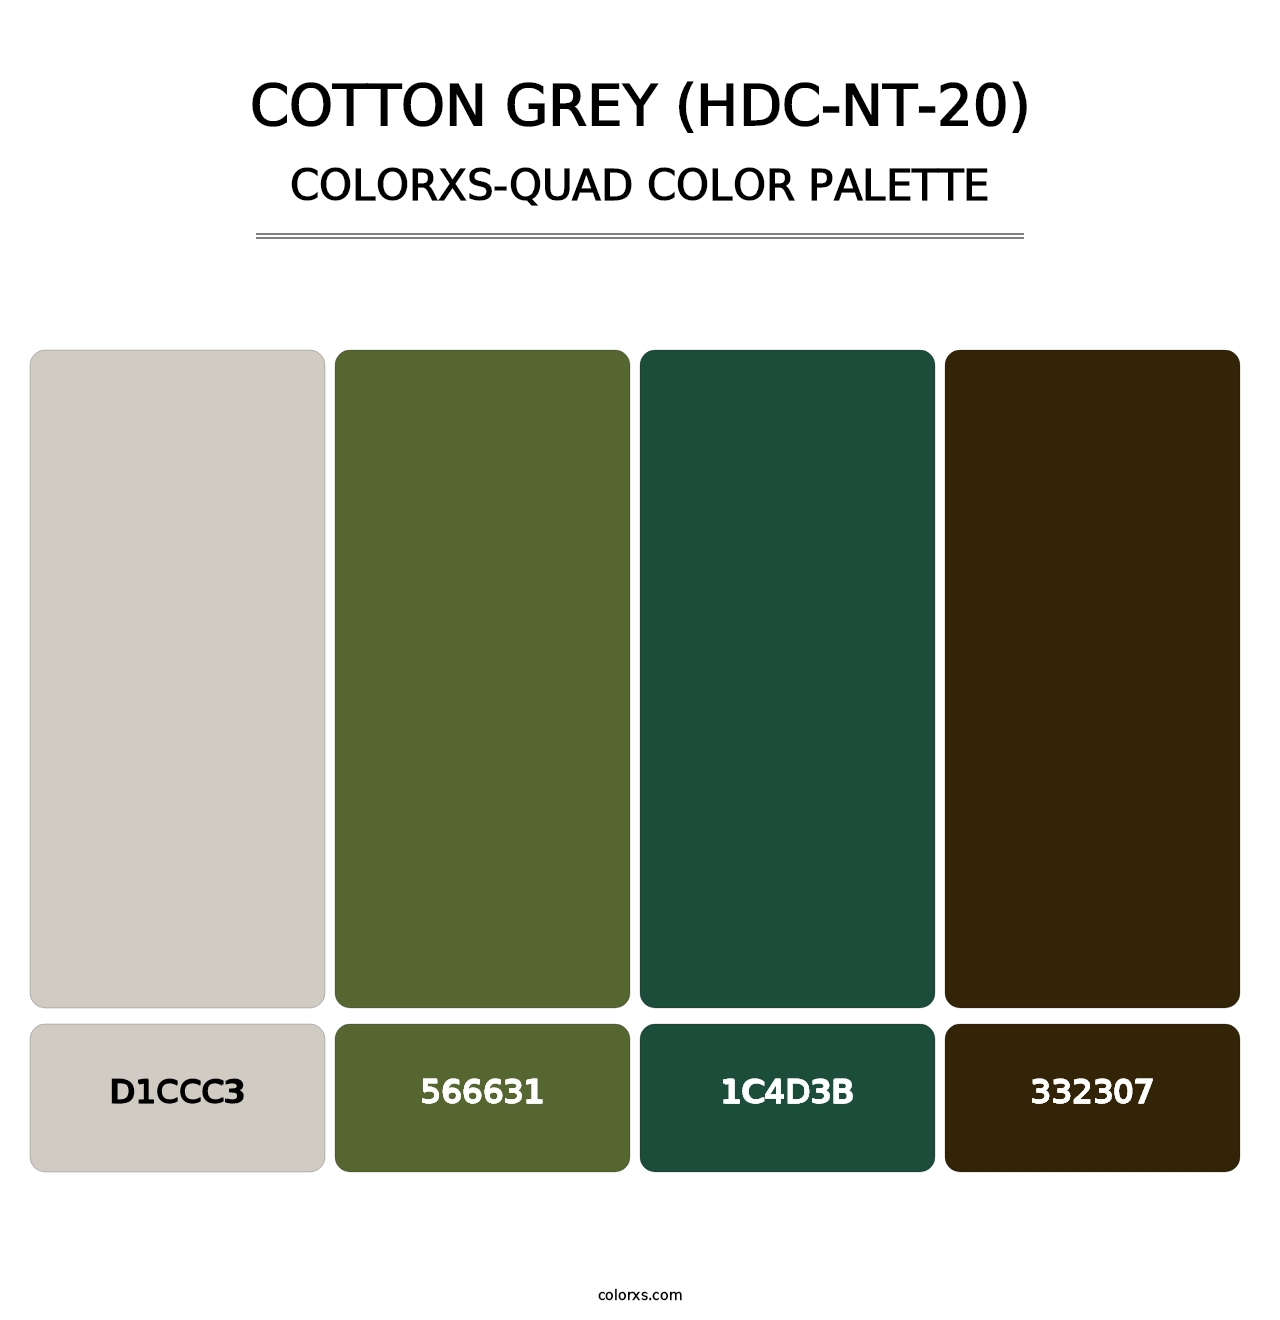 Cotton Grey (HDC-NT-20) - Colorxs Quad Palette